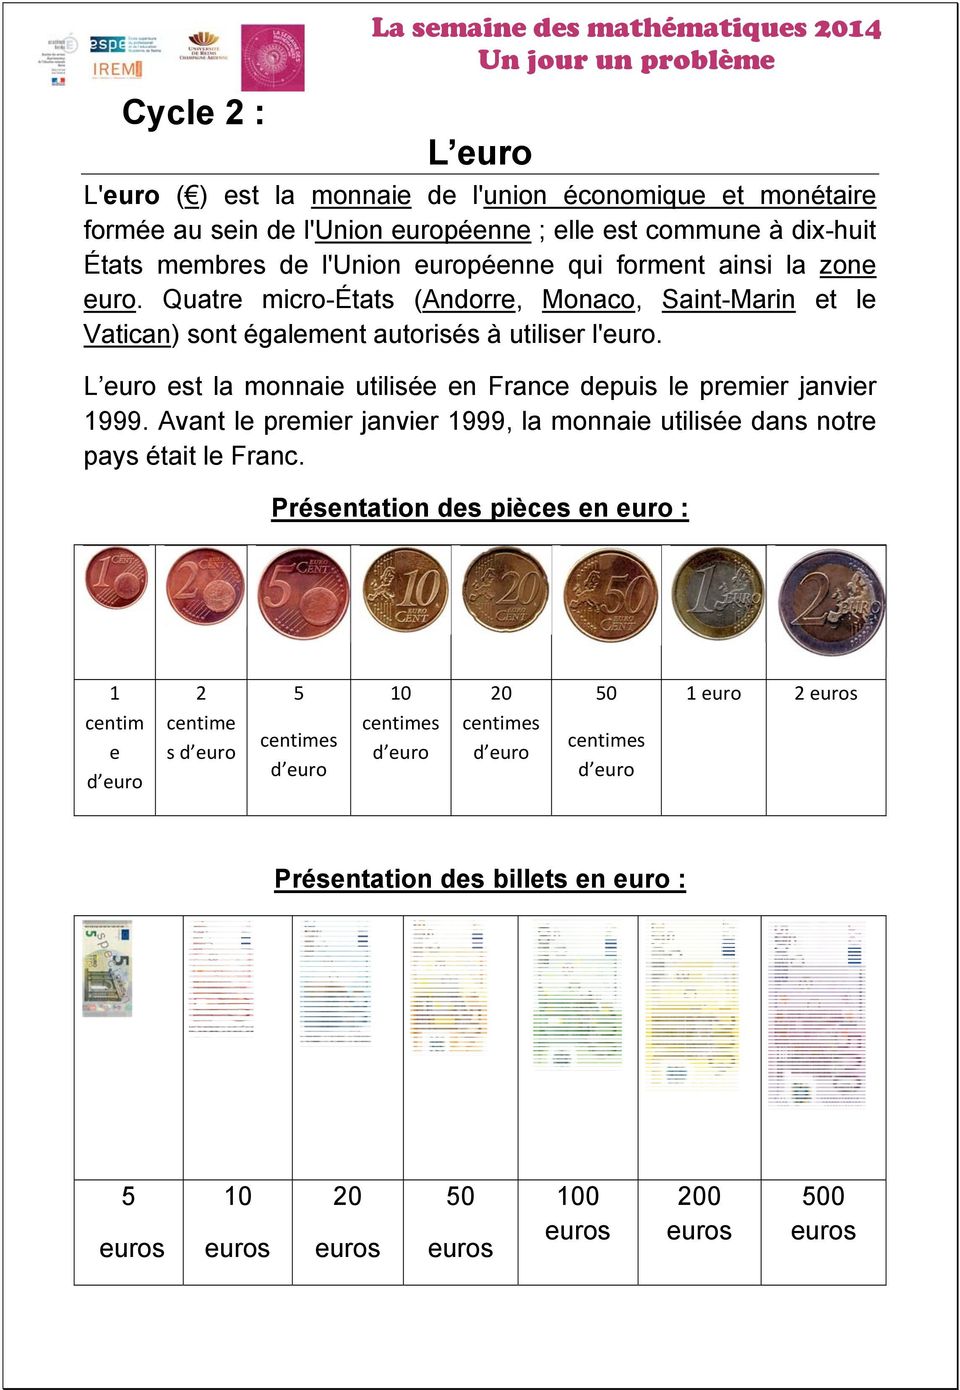 L euro est la monnaie utilisée en France depuis le premier janvier 1999. Avant le premier janvier 1999, la monnaie utilisée dans notre pays était le Franc.